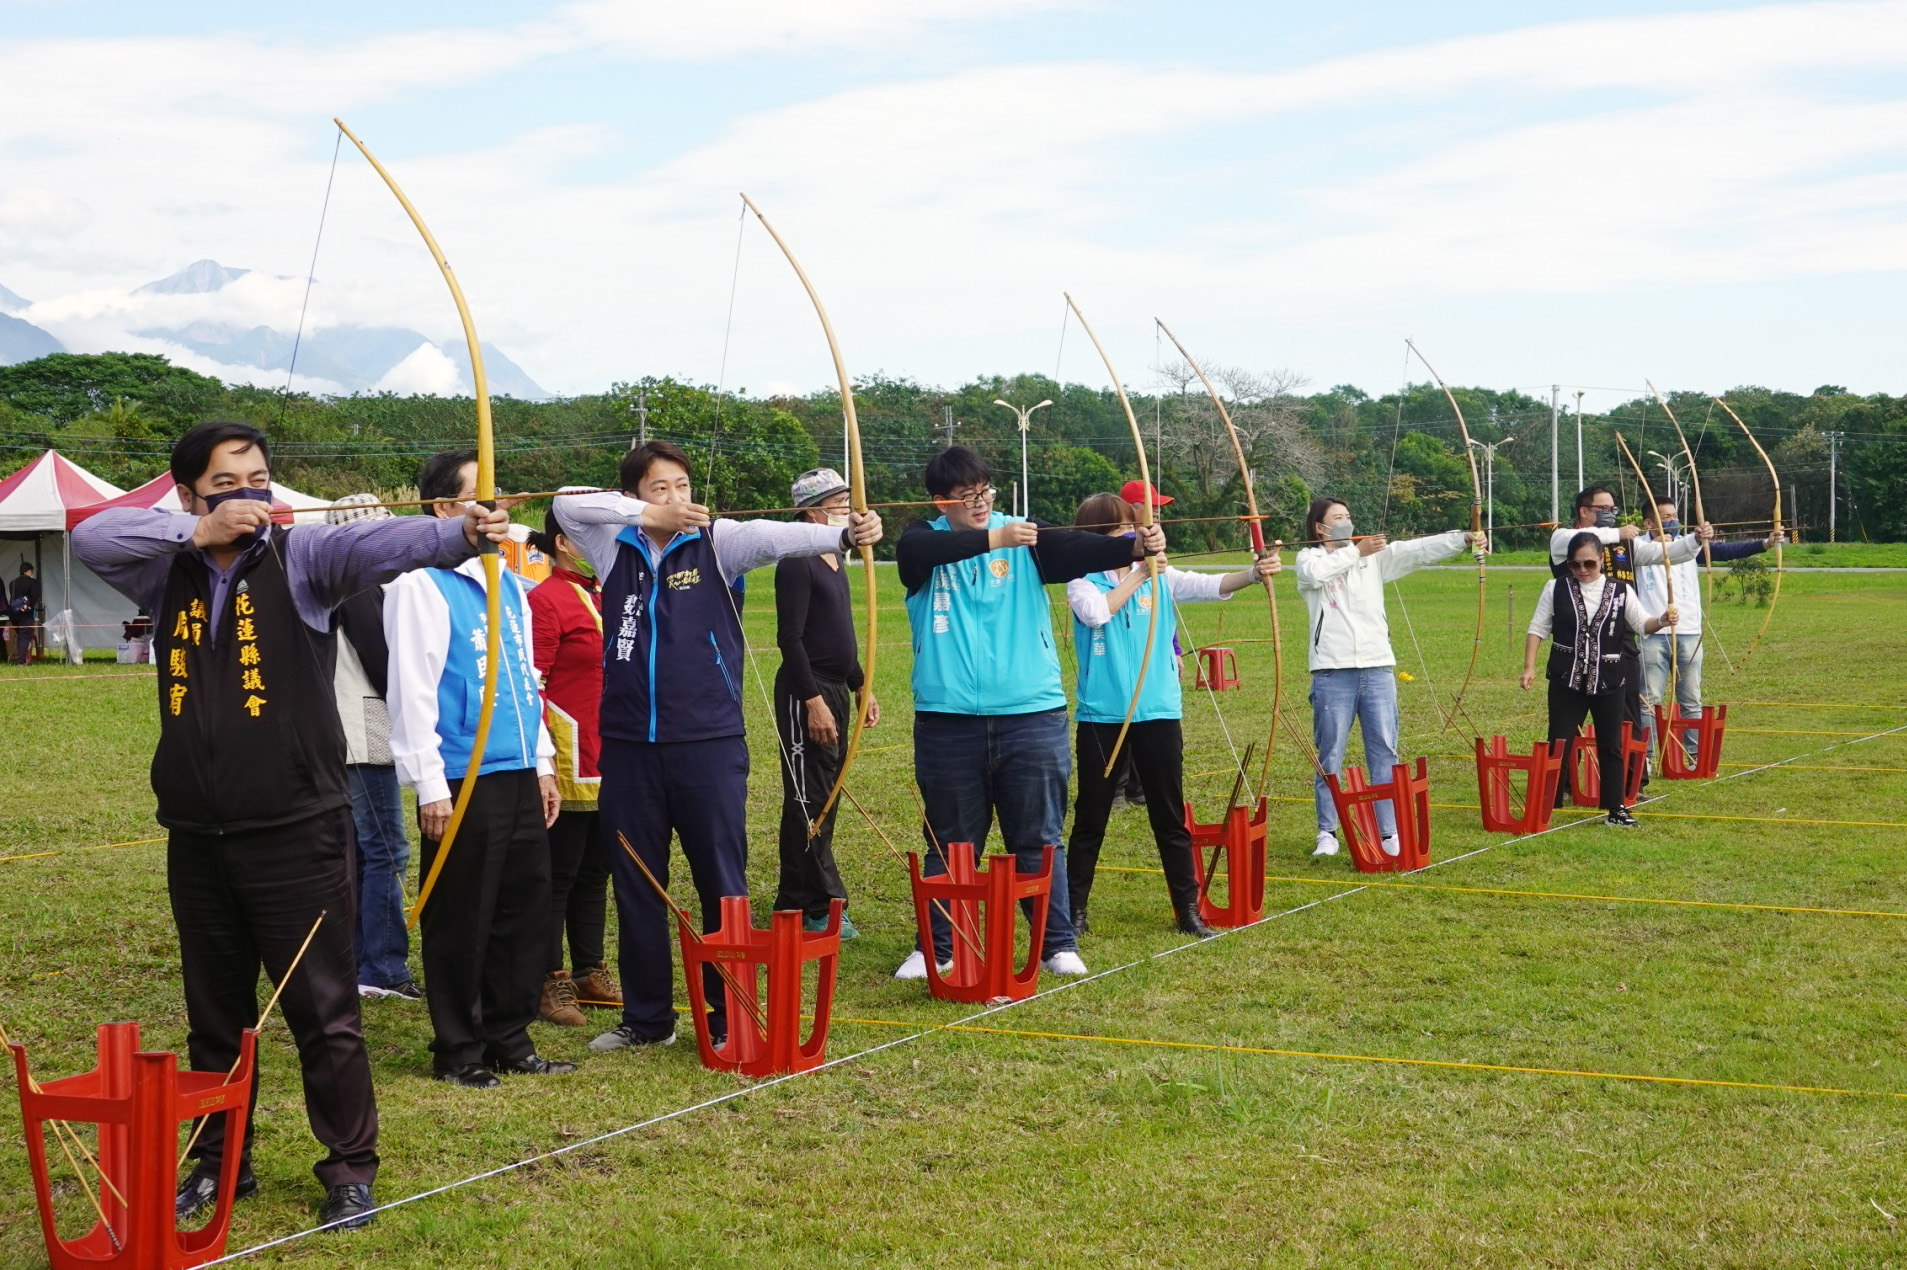 花蓮市長魏嘉彥受邀與來賓共同為比賽開弓開球。大會提供